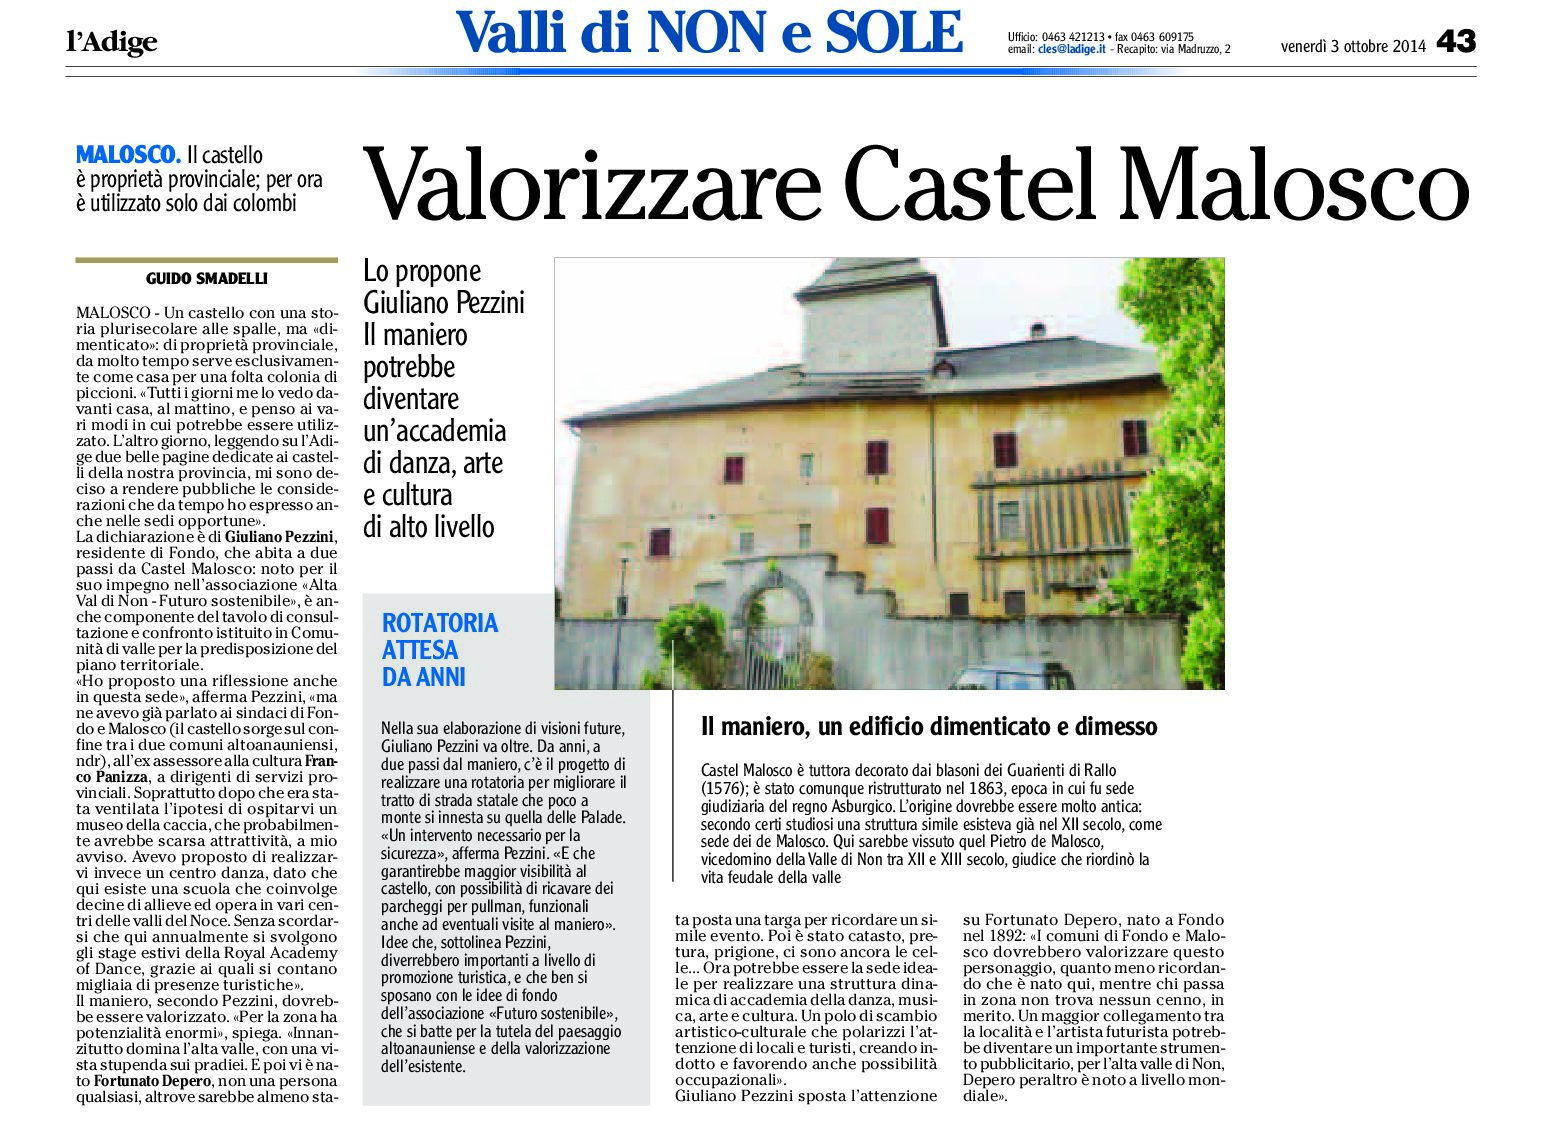 Malosco: il castello (di proprietà provinciale) deve essere valorizzato